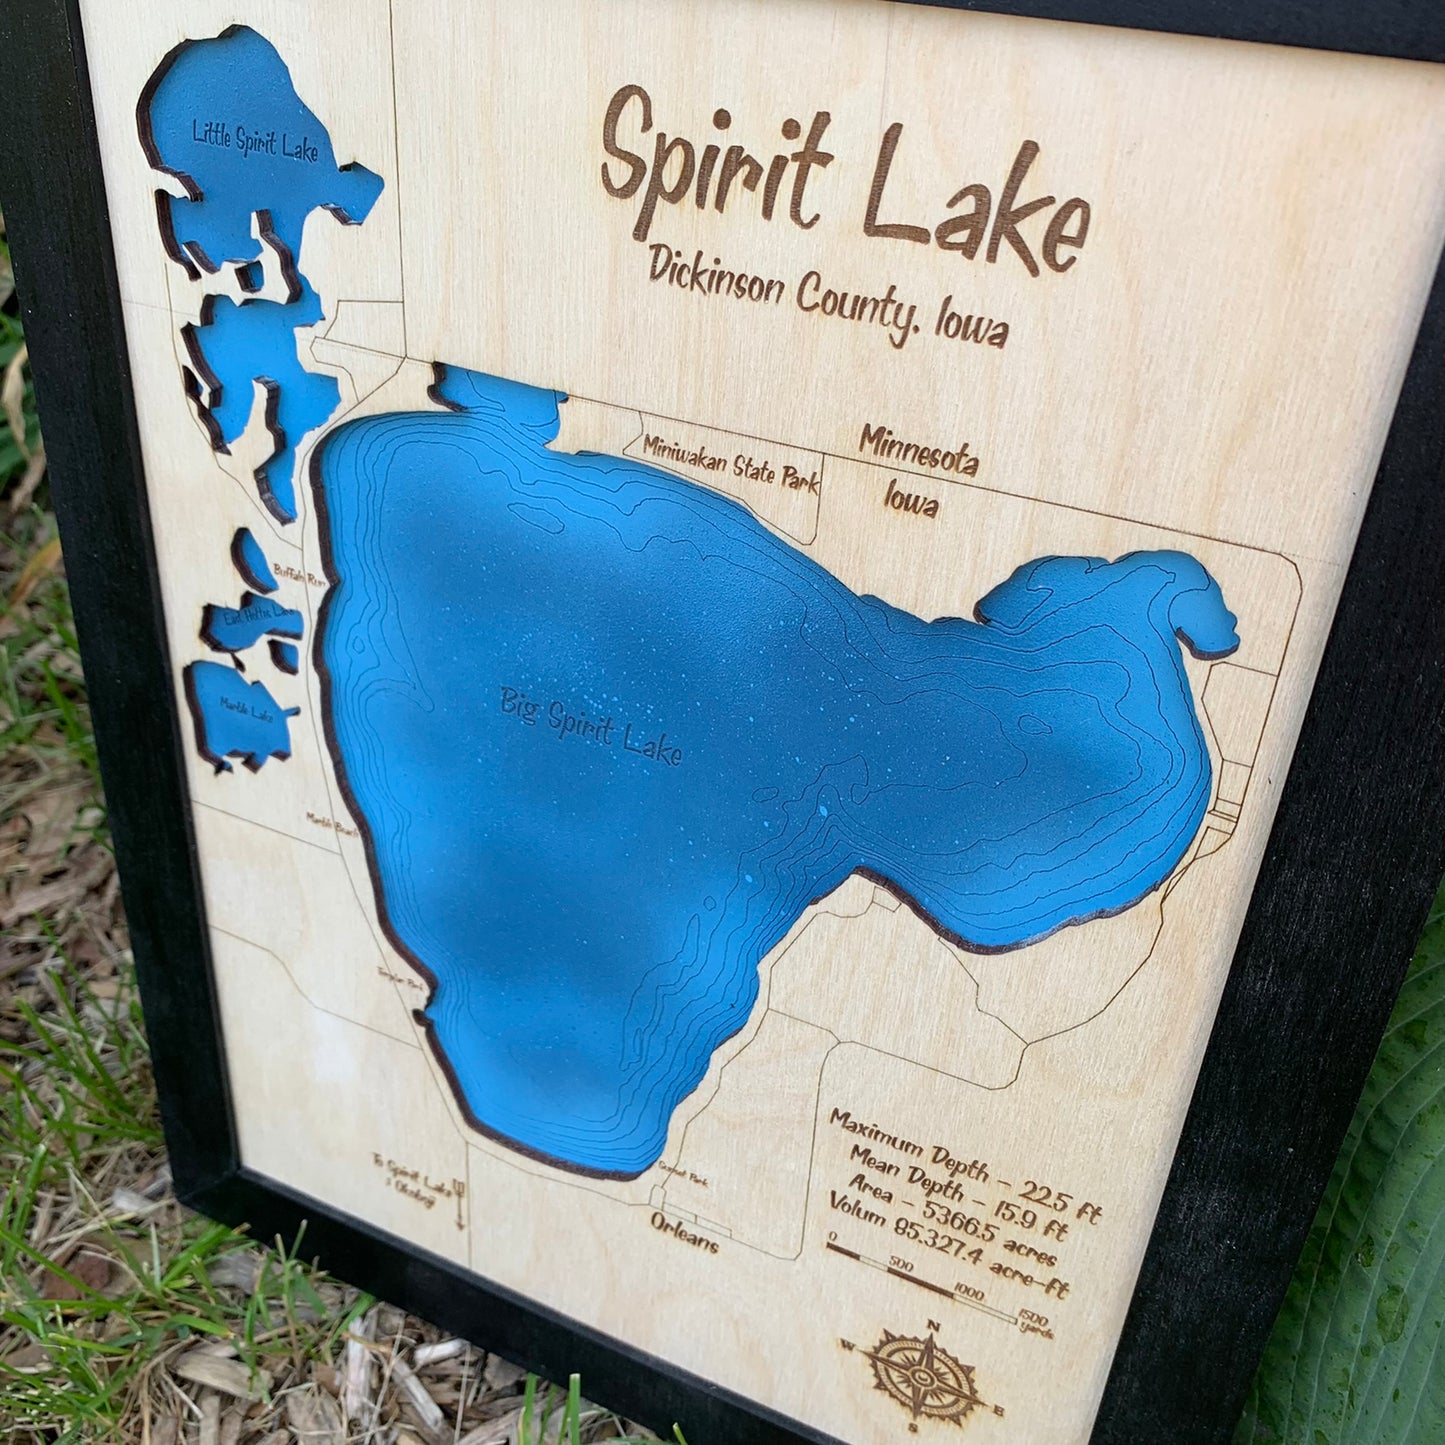 Laser Cut Engraved Wood Lake Map - Spirit Lake, Dickinson County, Iowa